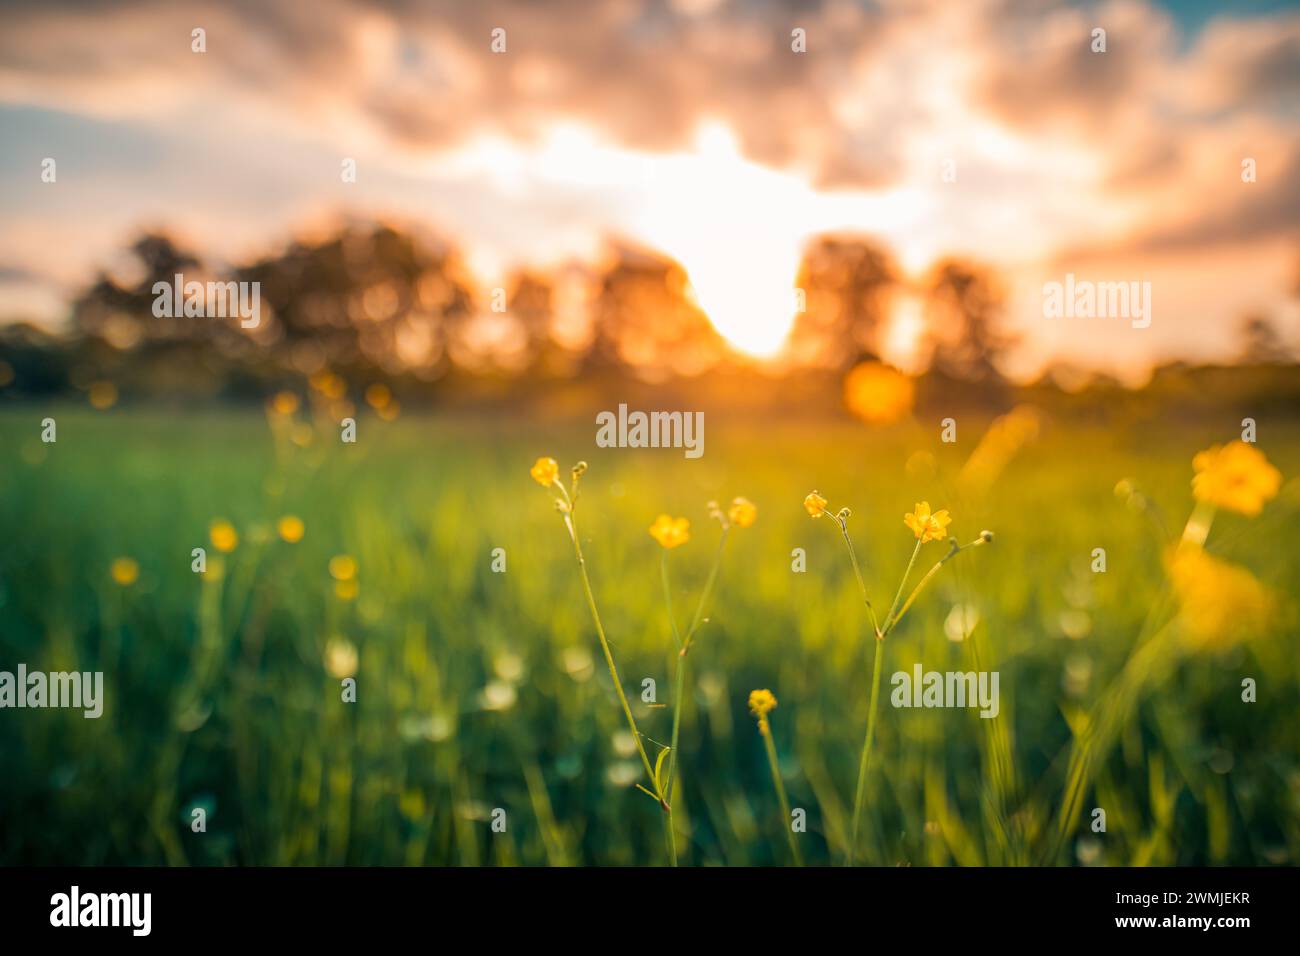 Abstrakte Landschaft des Sonnenuntergangs mit gelben Blumen und Graswiese auf der warmen goldenen Stunde Sonnenuntergang oder Sonnenaufgang. Ruhiger Frühling Sommer Natur Nahaufnahme Unschärfe Stockfoto